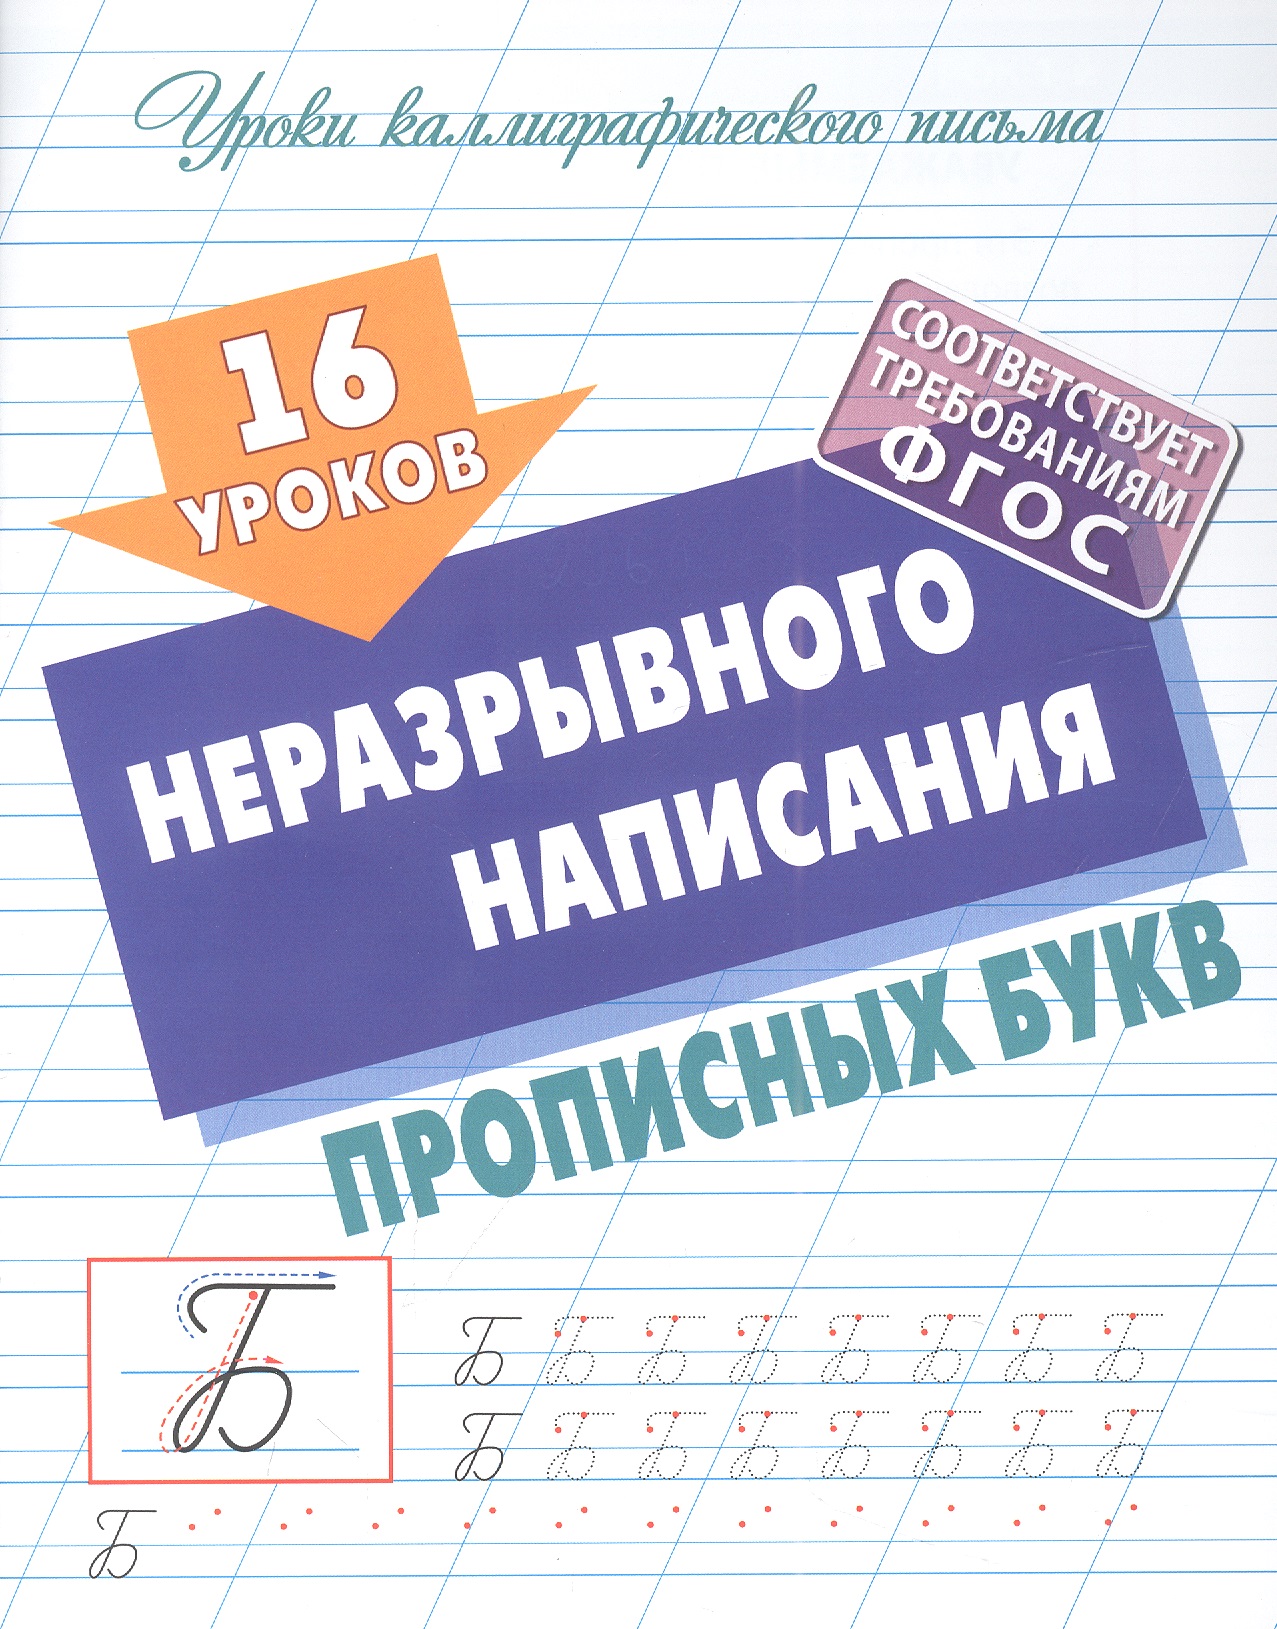 Петренко Станислав Викторович 16 уроков неразрывного написания прописных букв упражнения для каллиграфического написания прописных букв